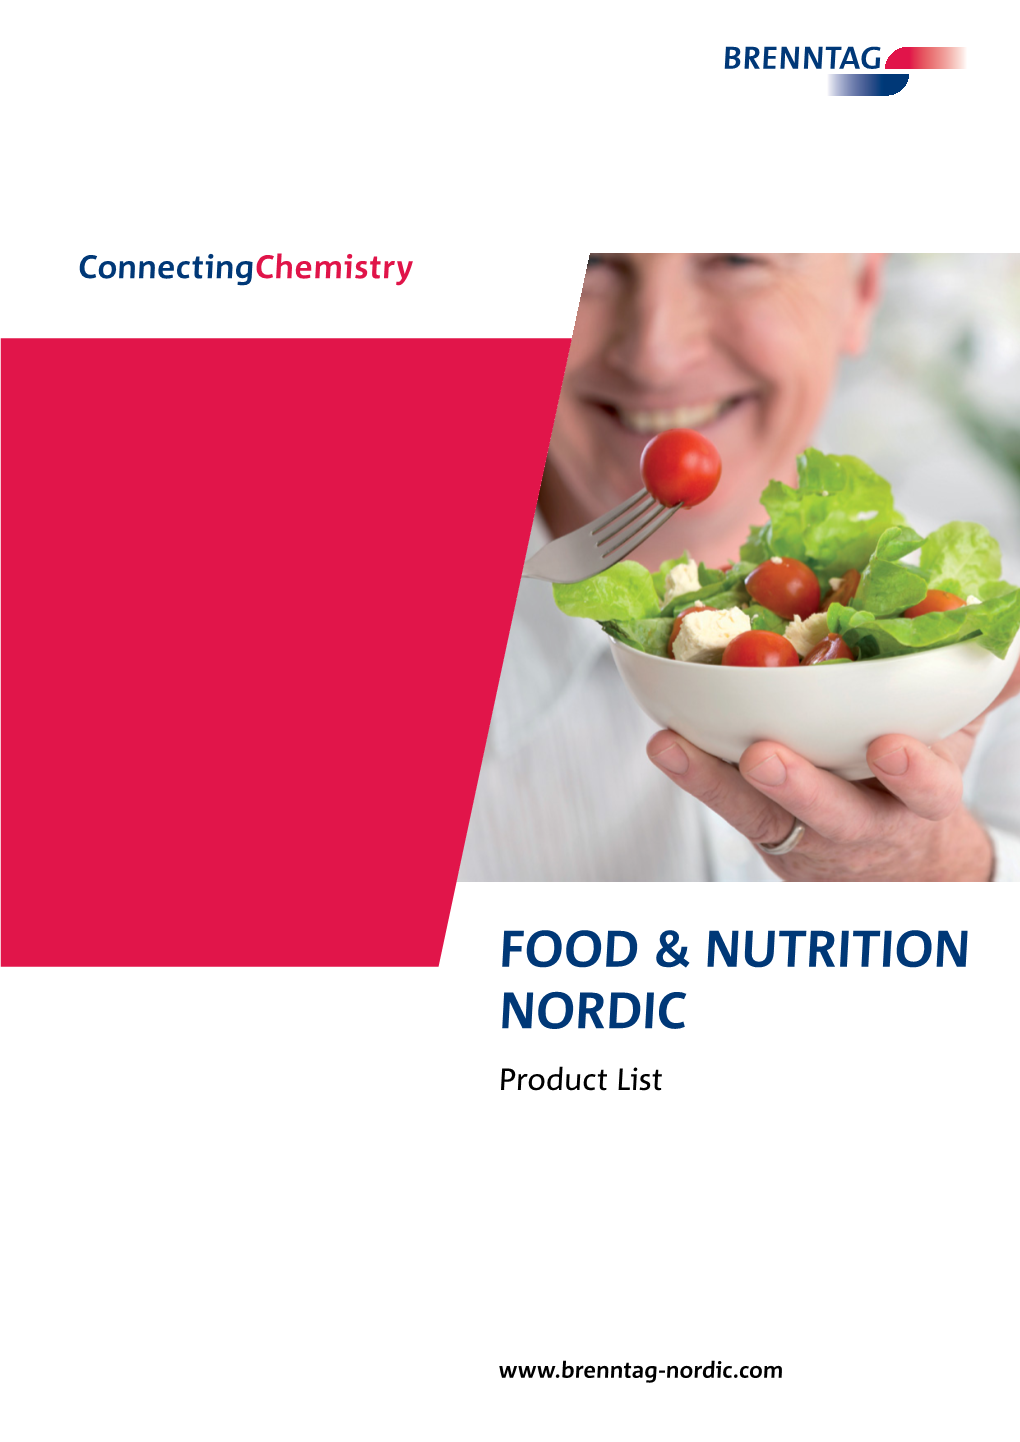 Food & Nutrition Nordic